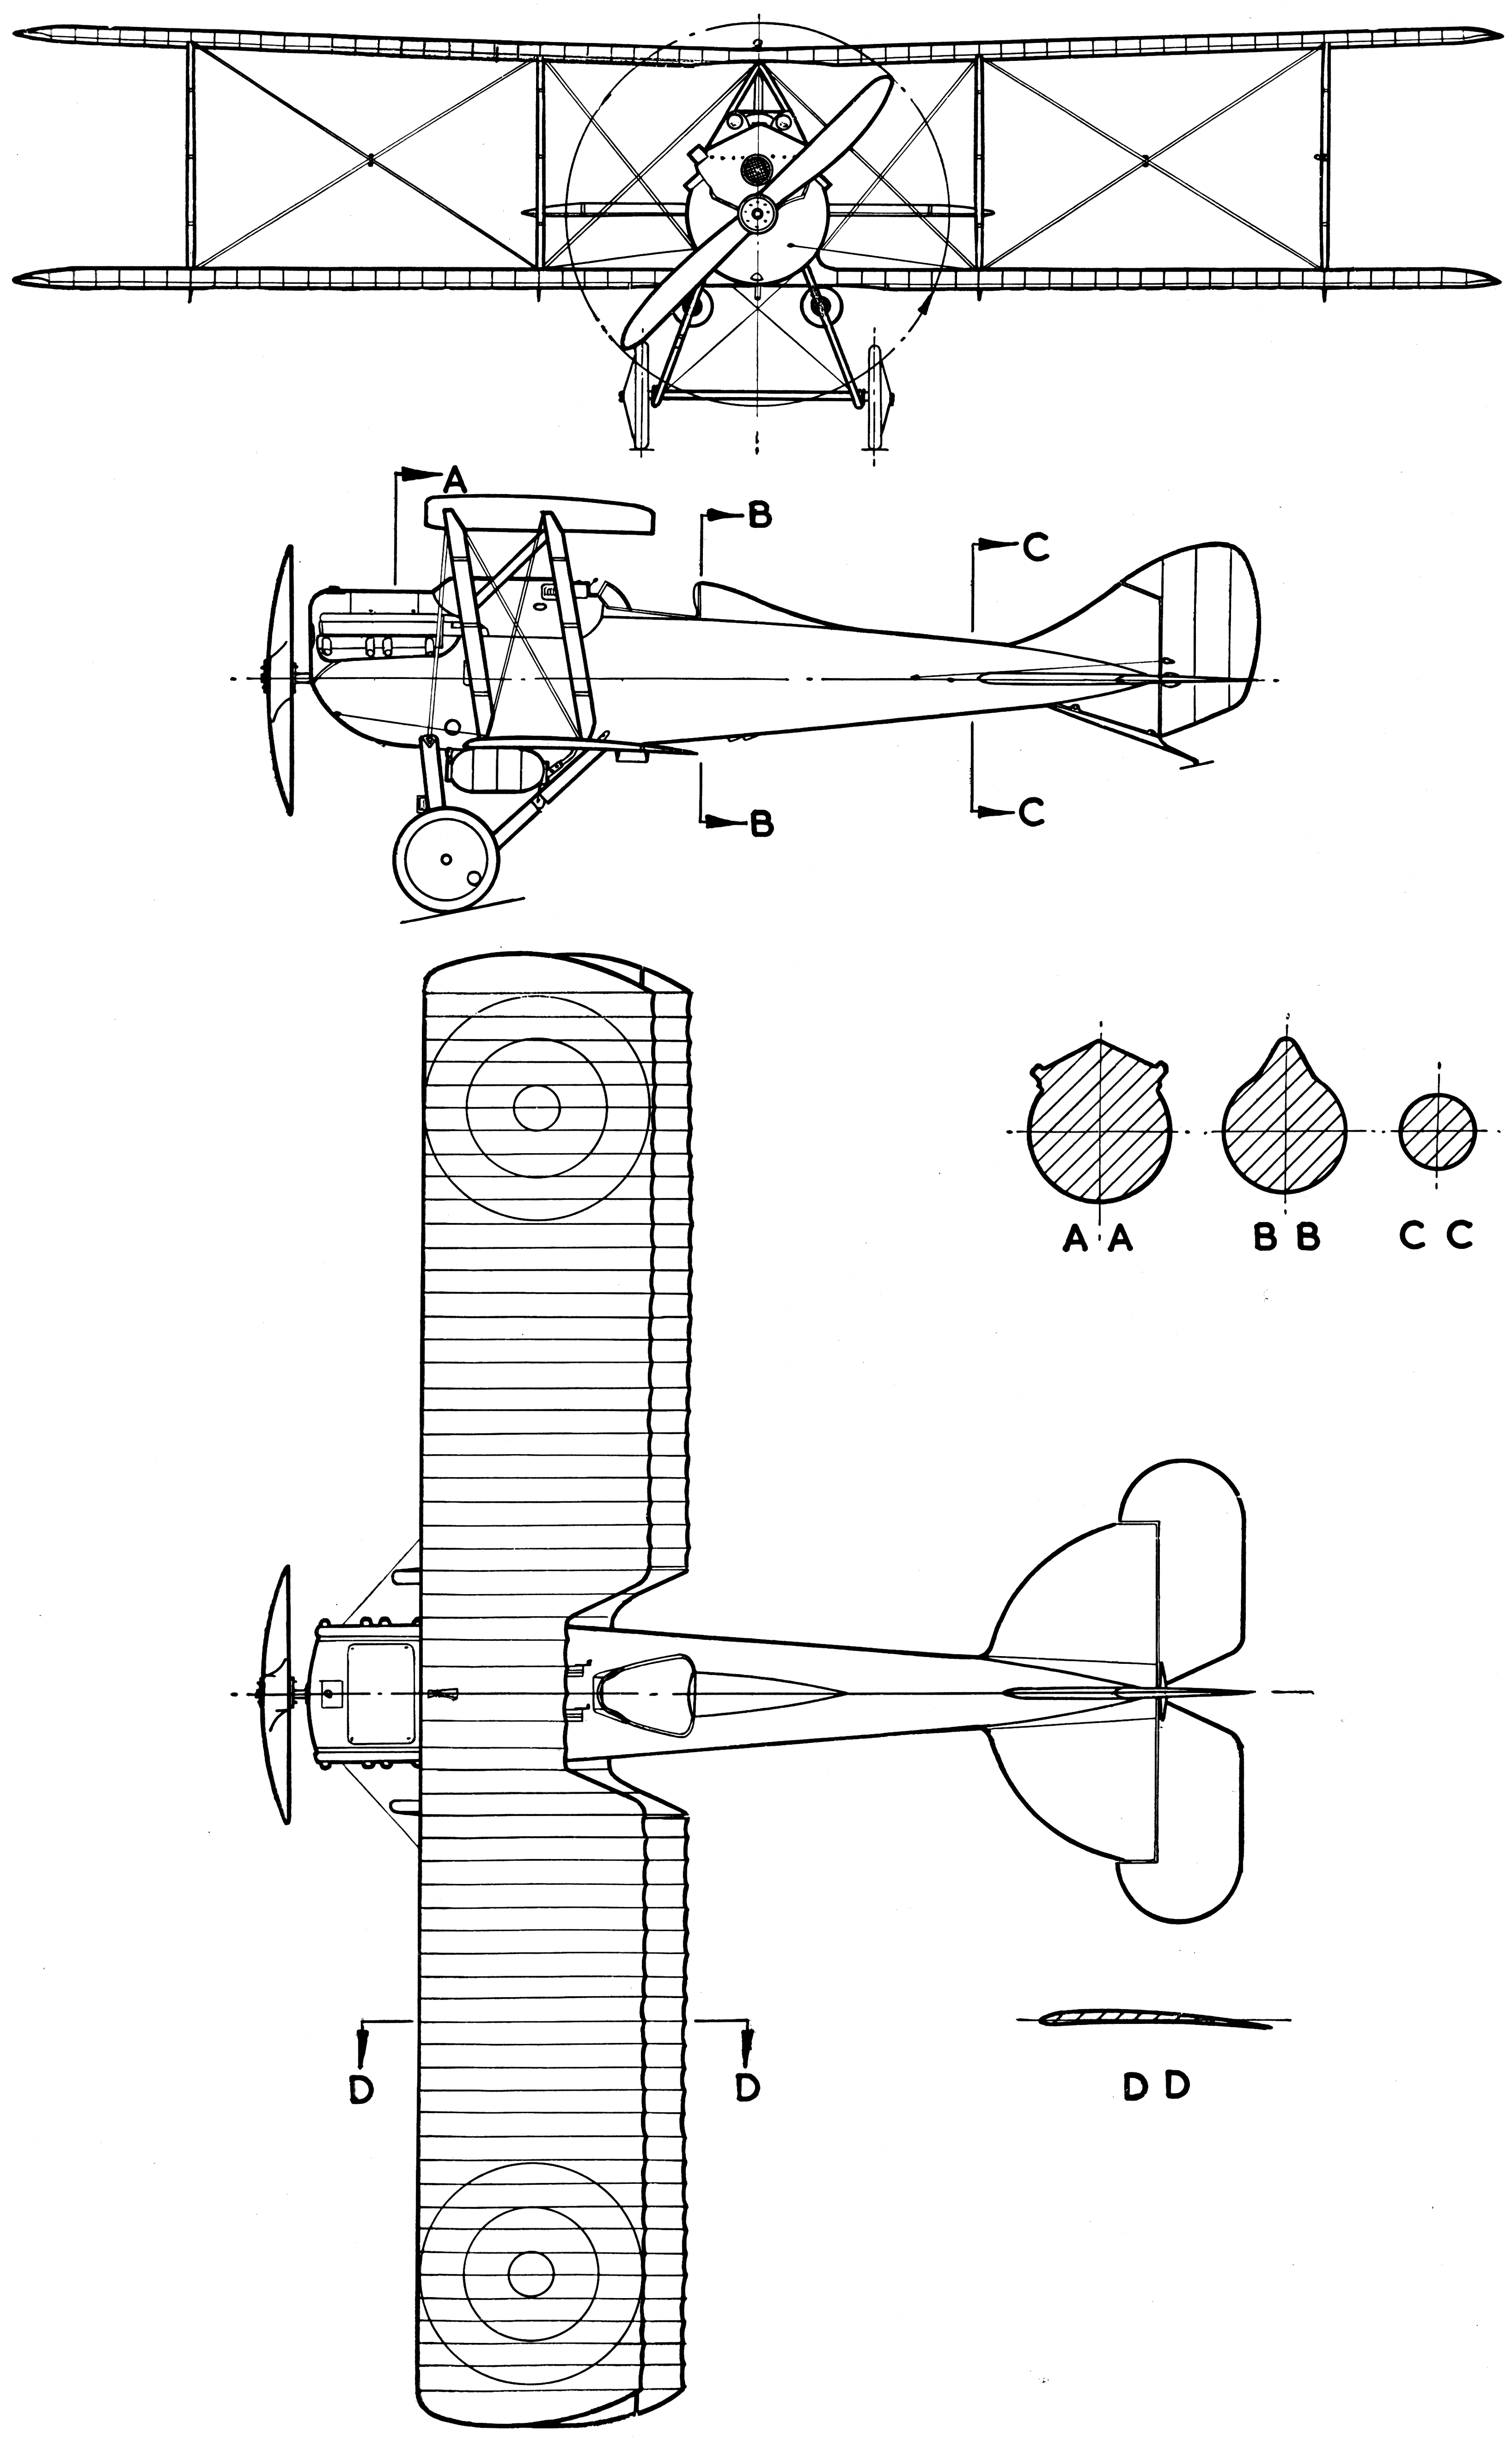 Nieuport-Delage NiD 29 blueprint